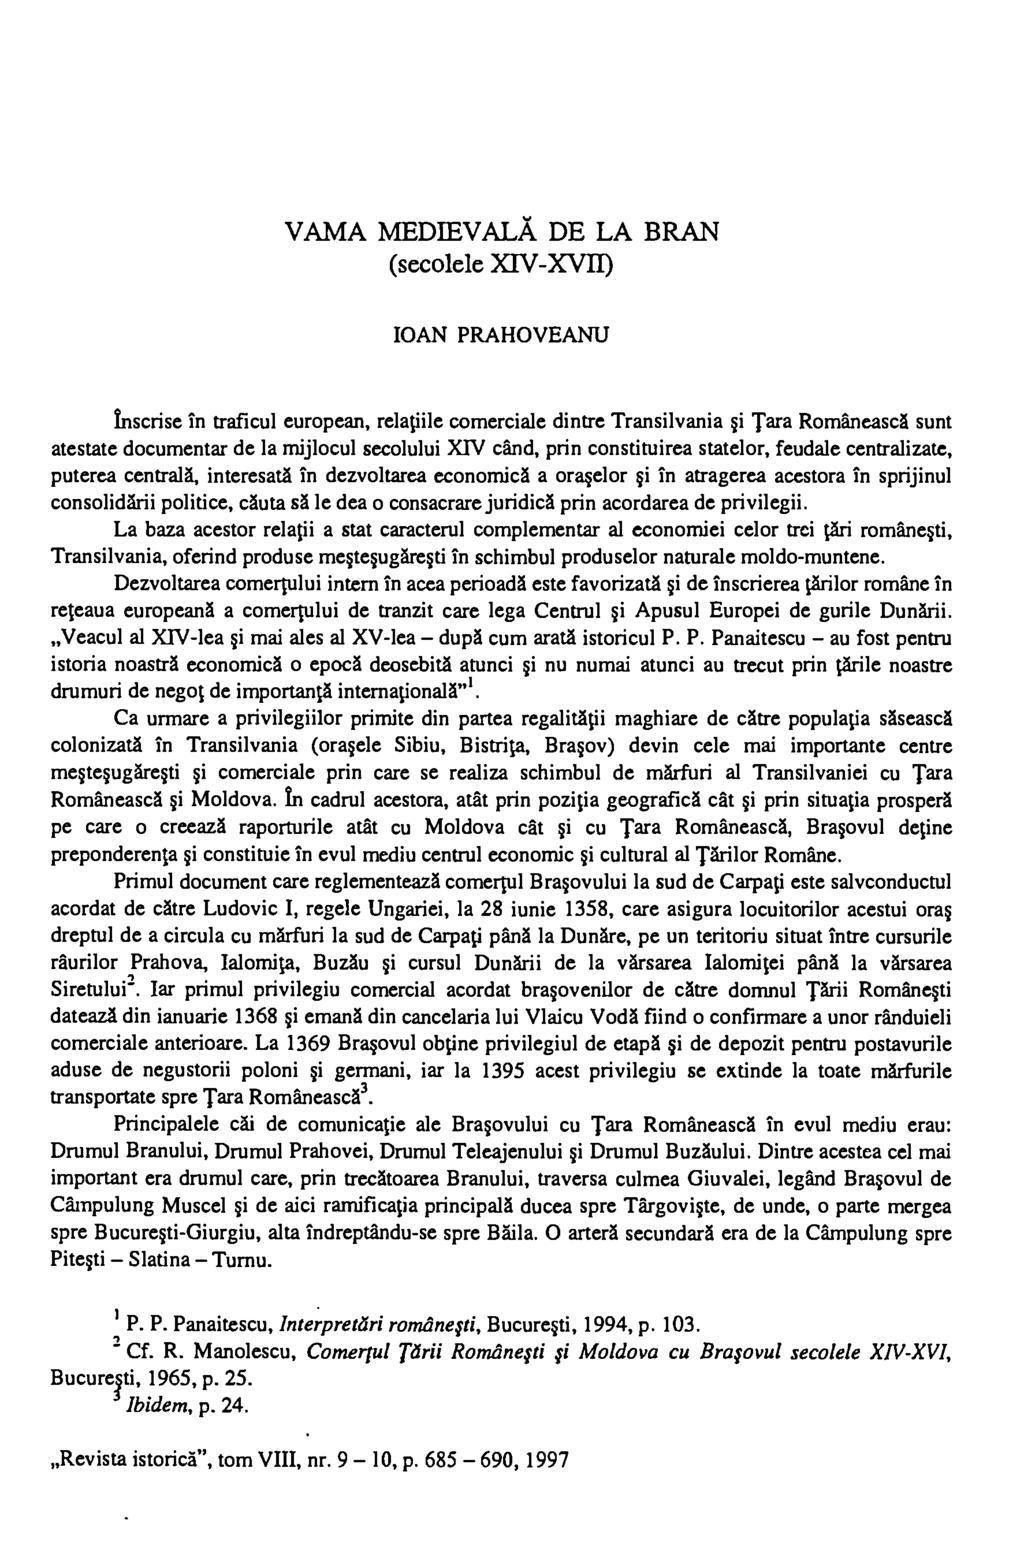 VAMA MEDIEVALA DE LA BRAN (secolele XIV-XVII) IOAN PRAHOVEANU Inscrise in traficul european, relaiile comerciale dintre Transilvania i Tara Romaneasca sunt atestate documentar de la mijlocul